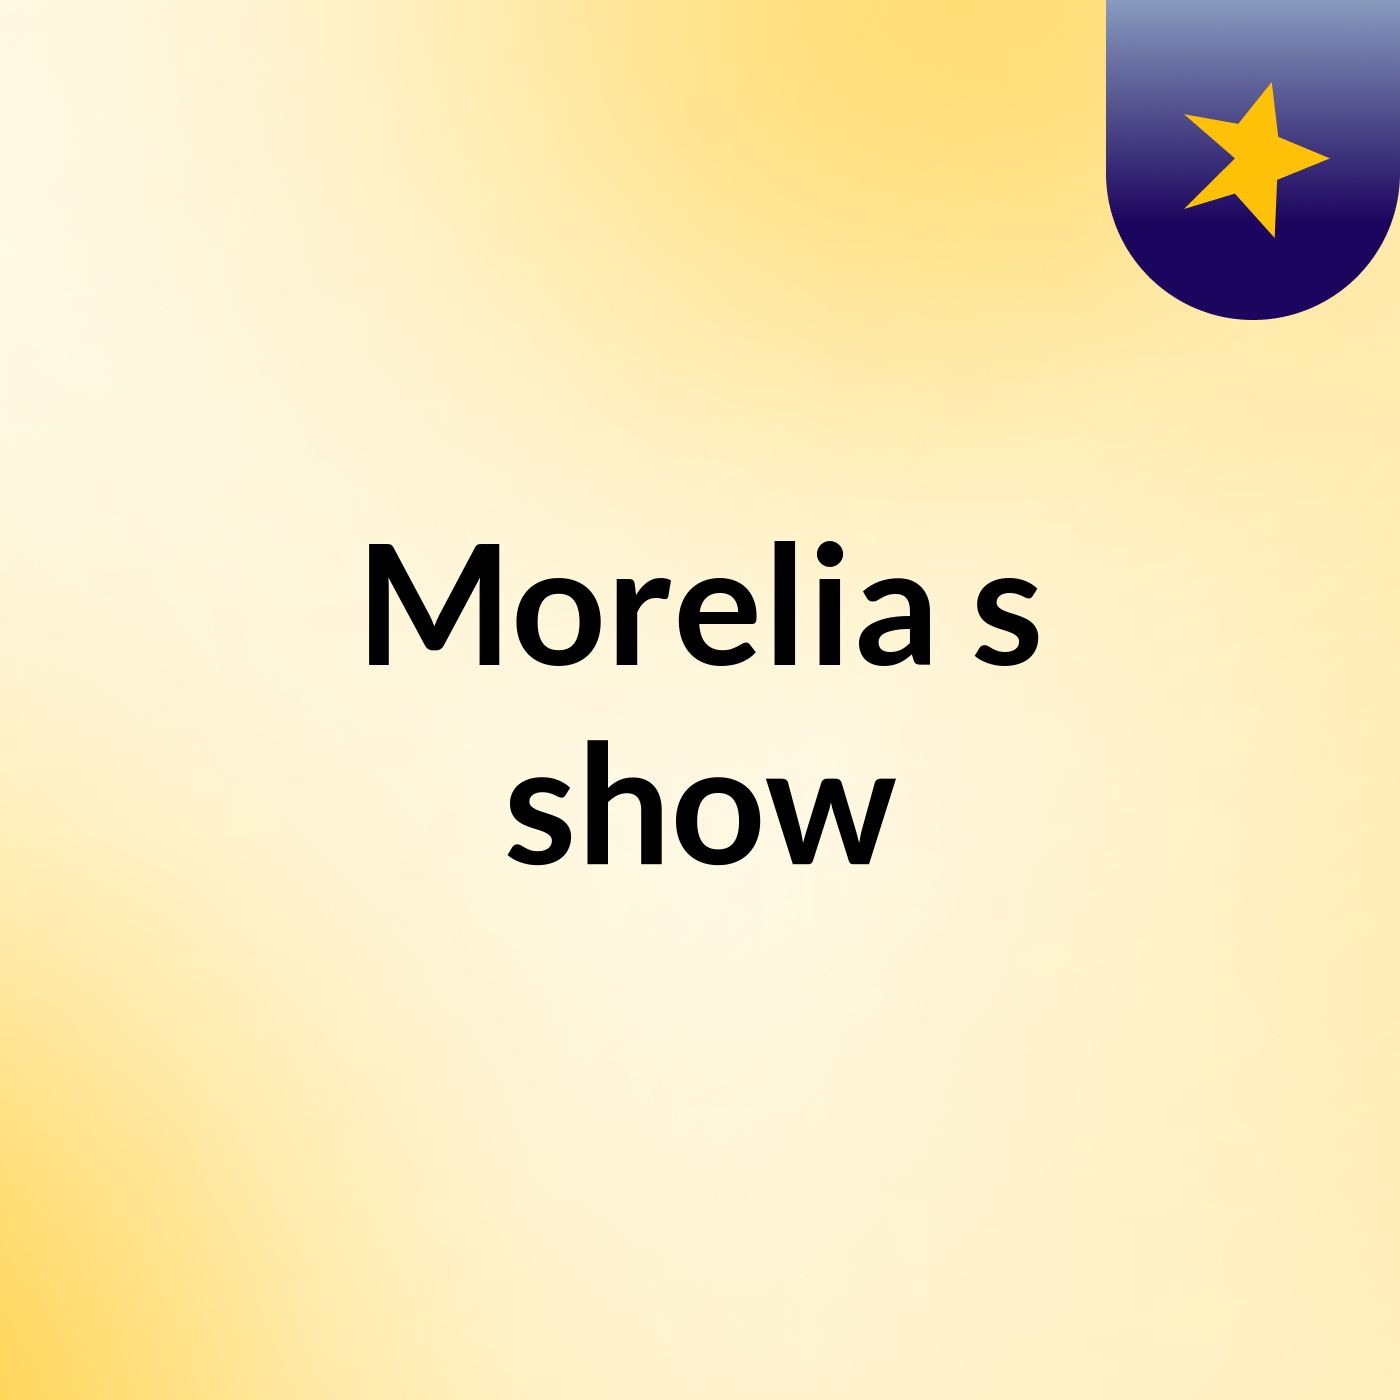 Morelia's show